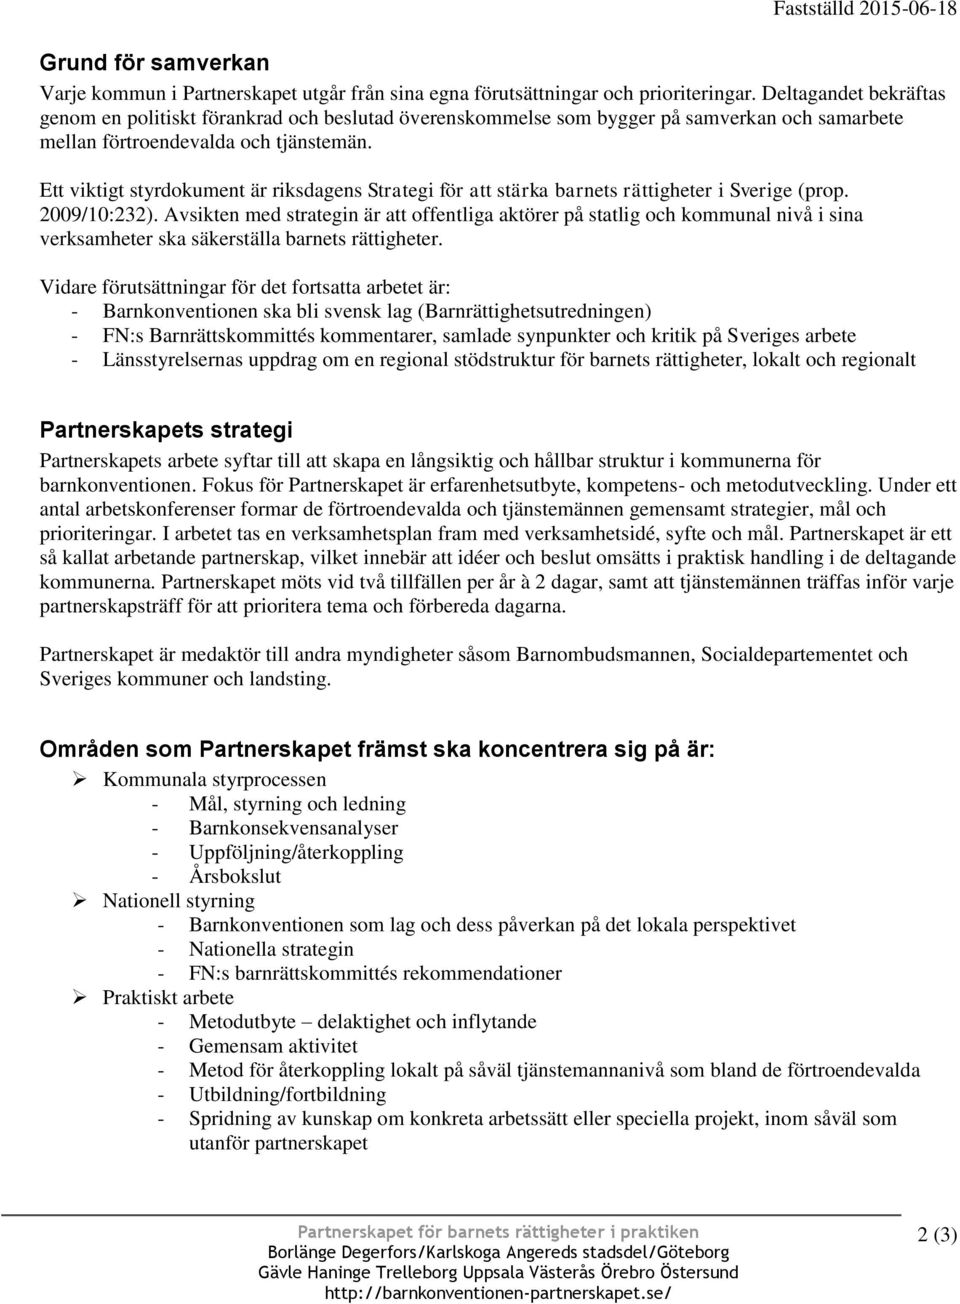 Ett viktigt styrdokument är riksdagens Strategi för att stärka barnets rättigheter i Sverige (prop. 2009/10:232).